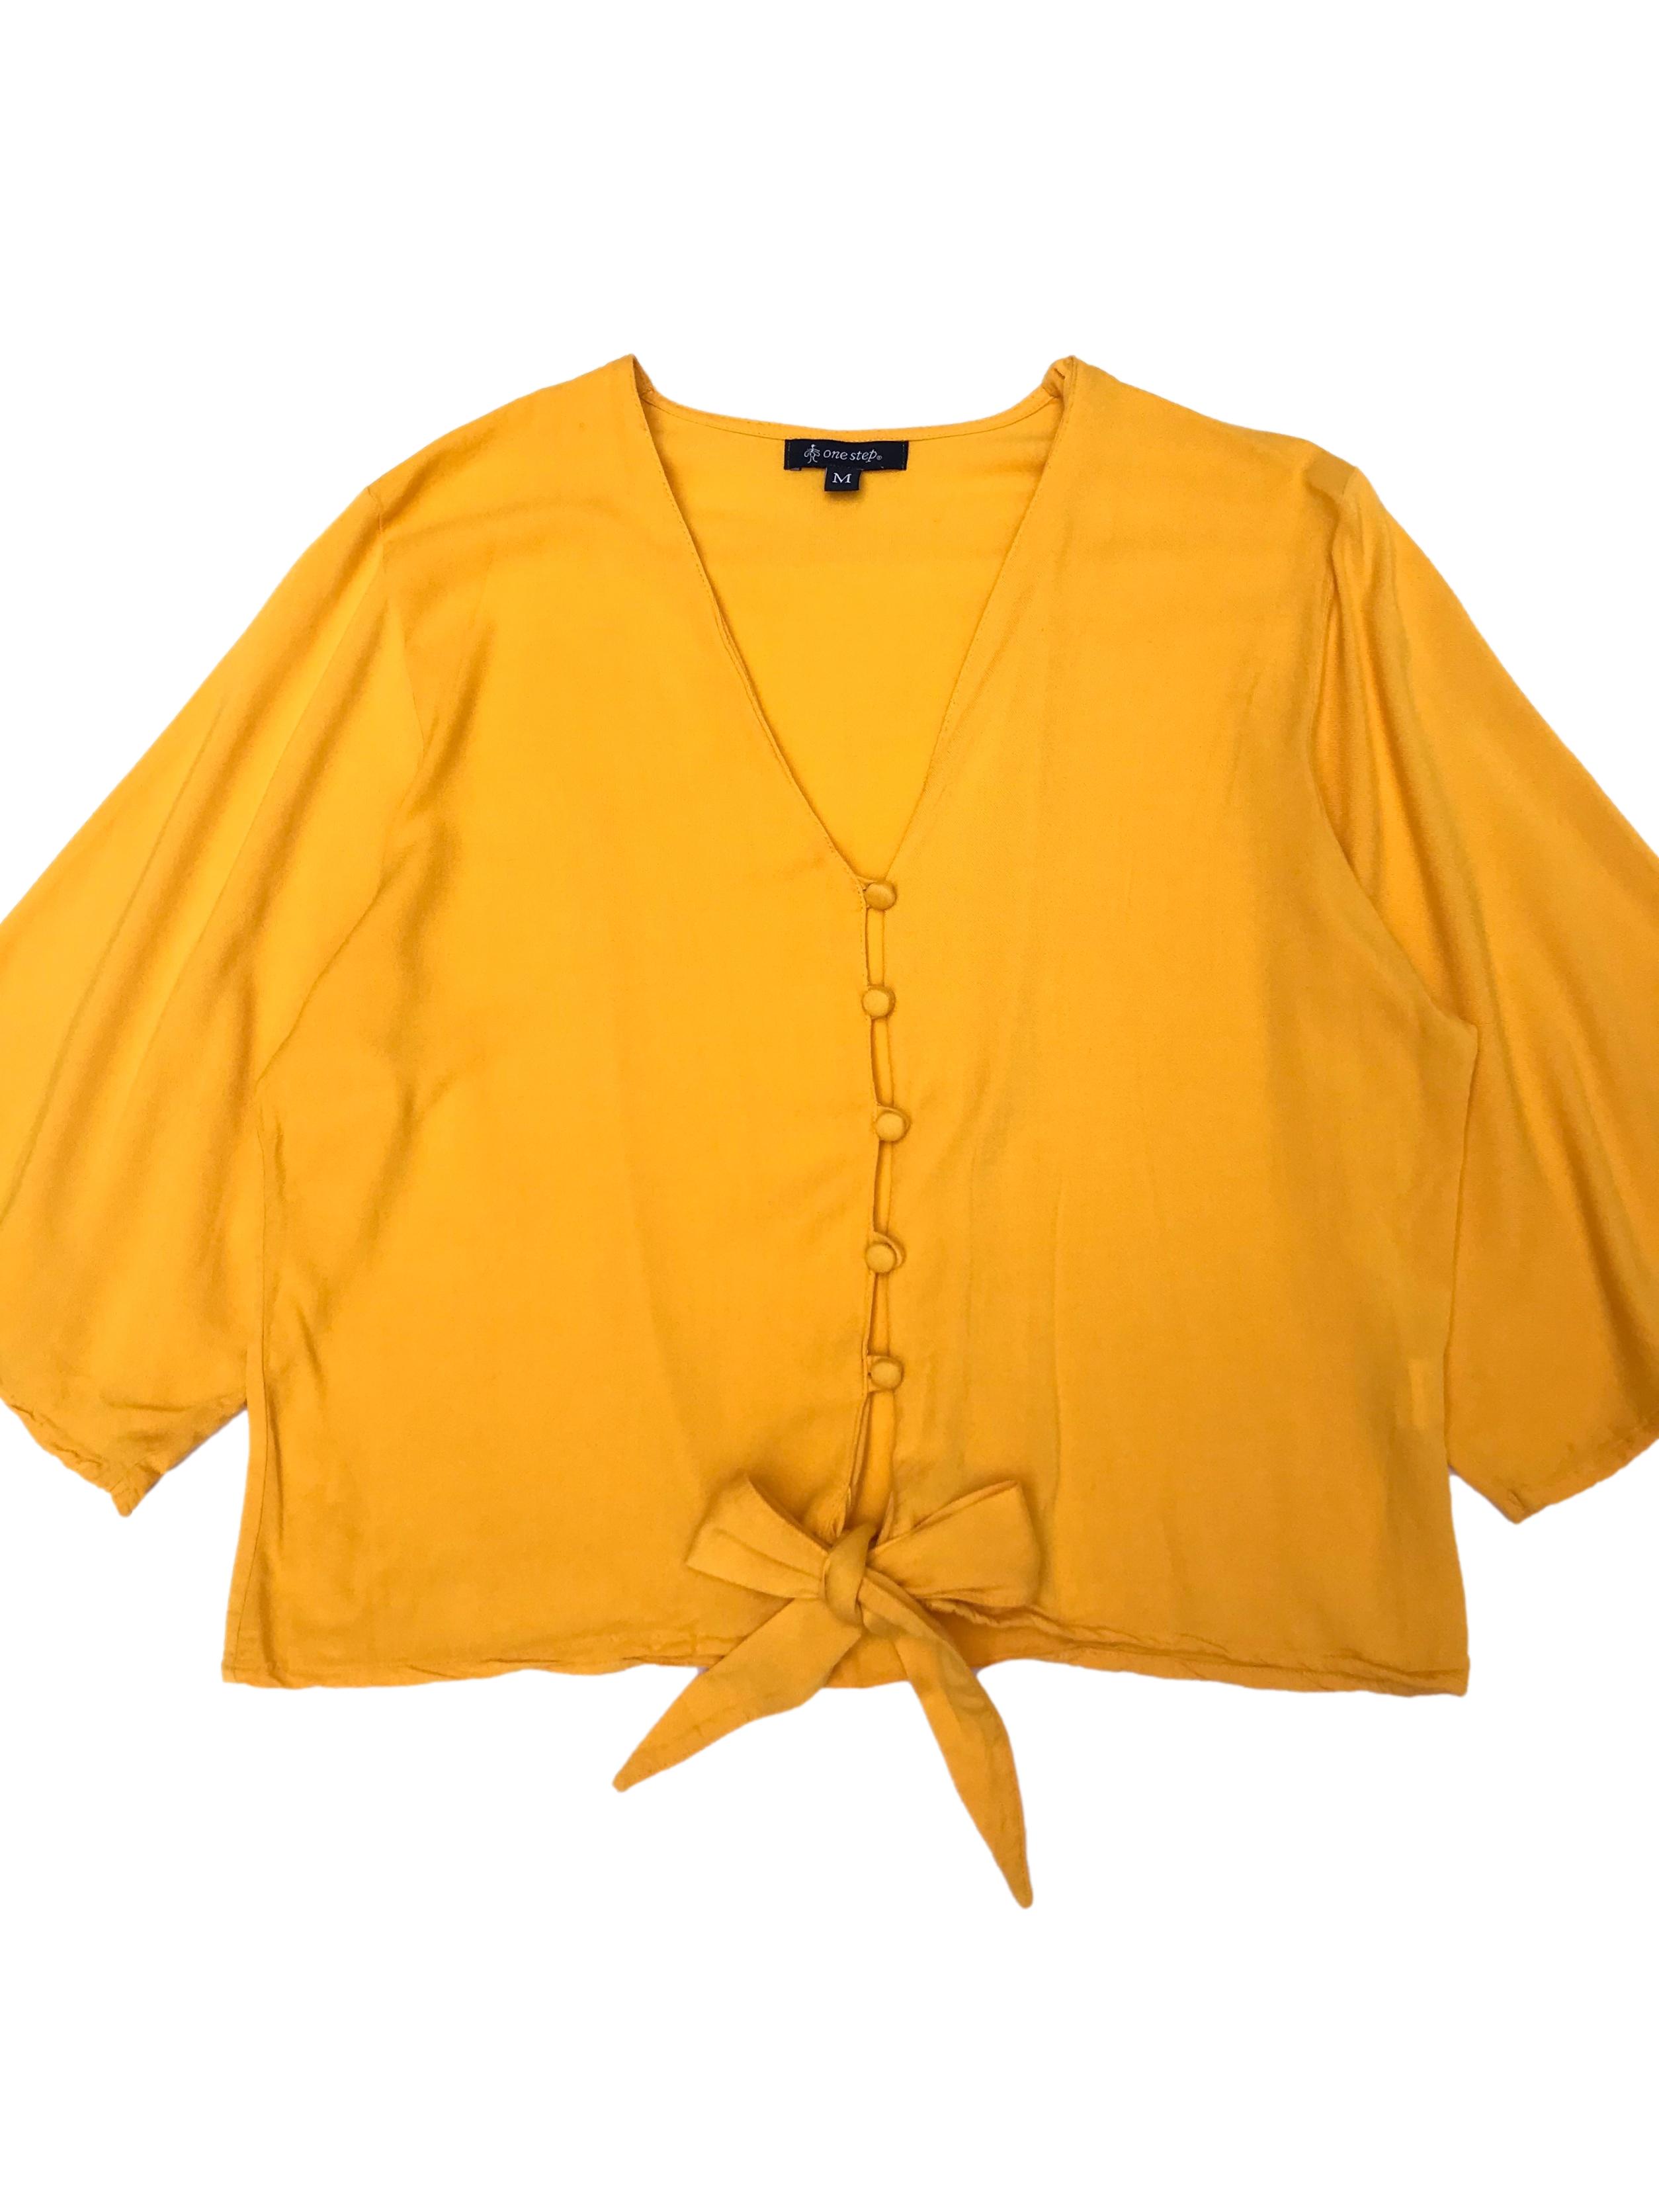 Blusa amarilla 100% rayón con botones al centro y se amarra en la basta. Busto 104cm Largo 47cm